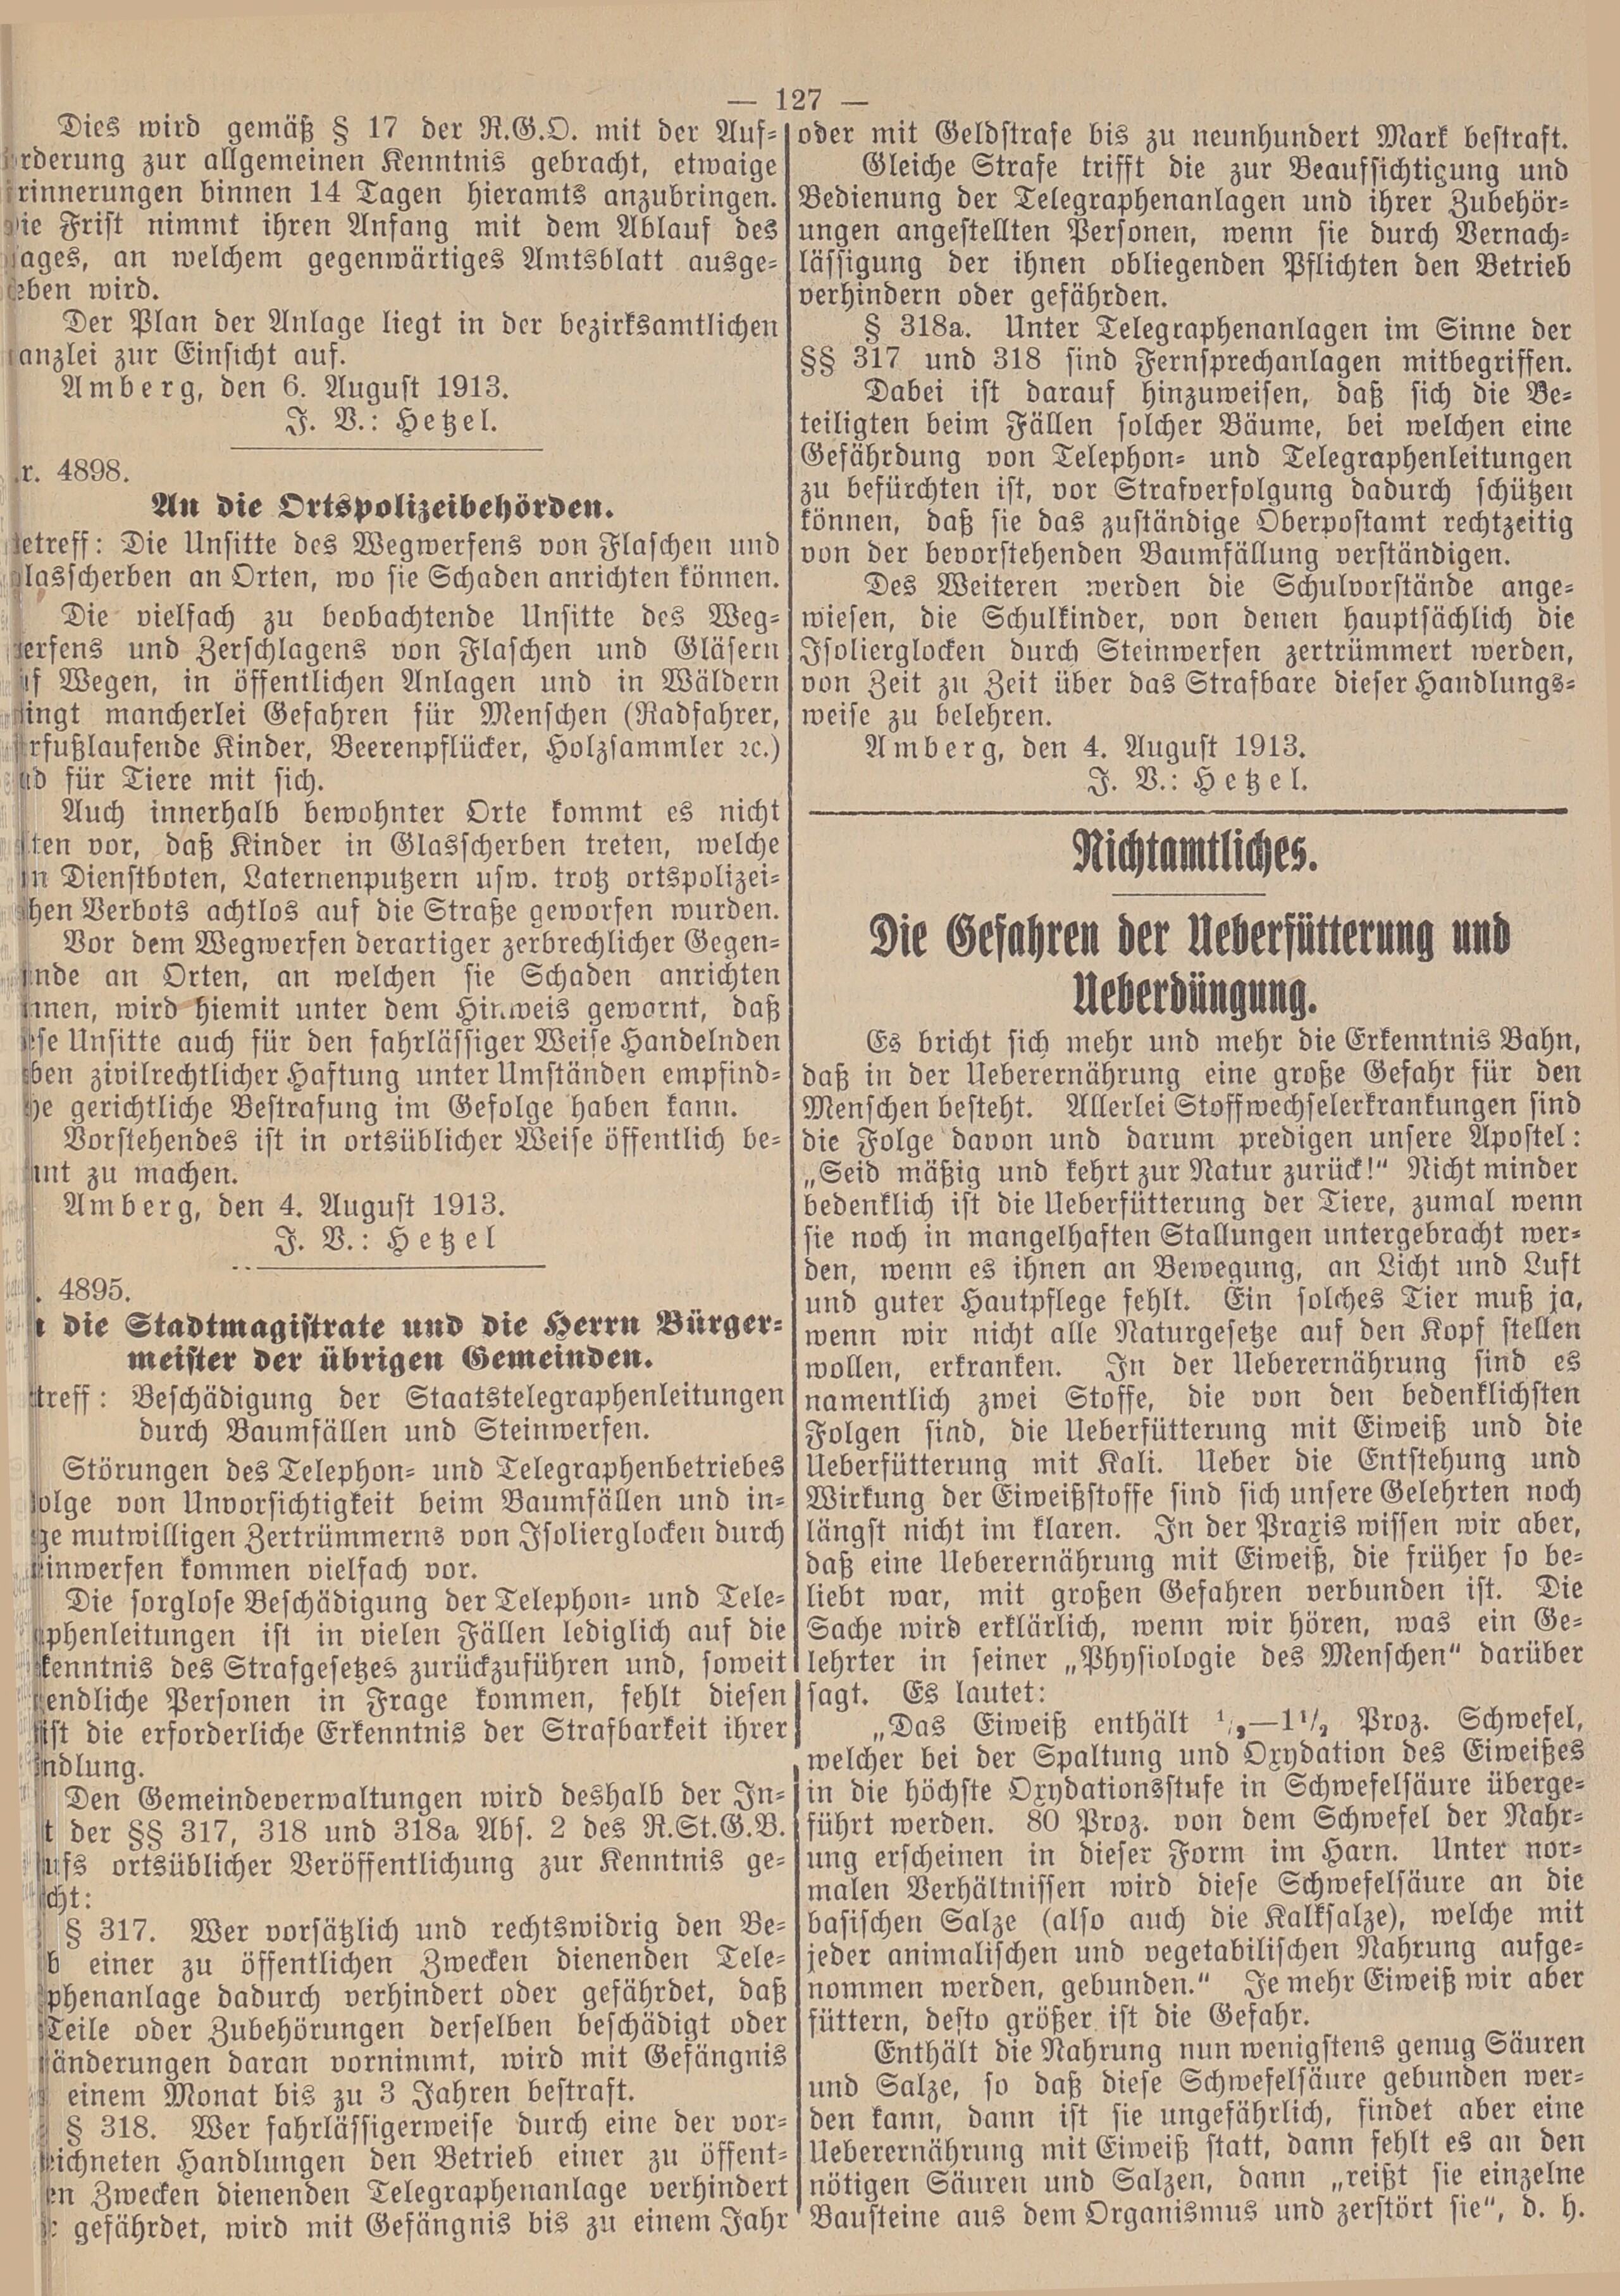 3. amtsblatt-amberg-1913-08-09-n37_6360